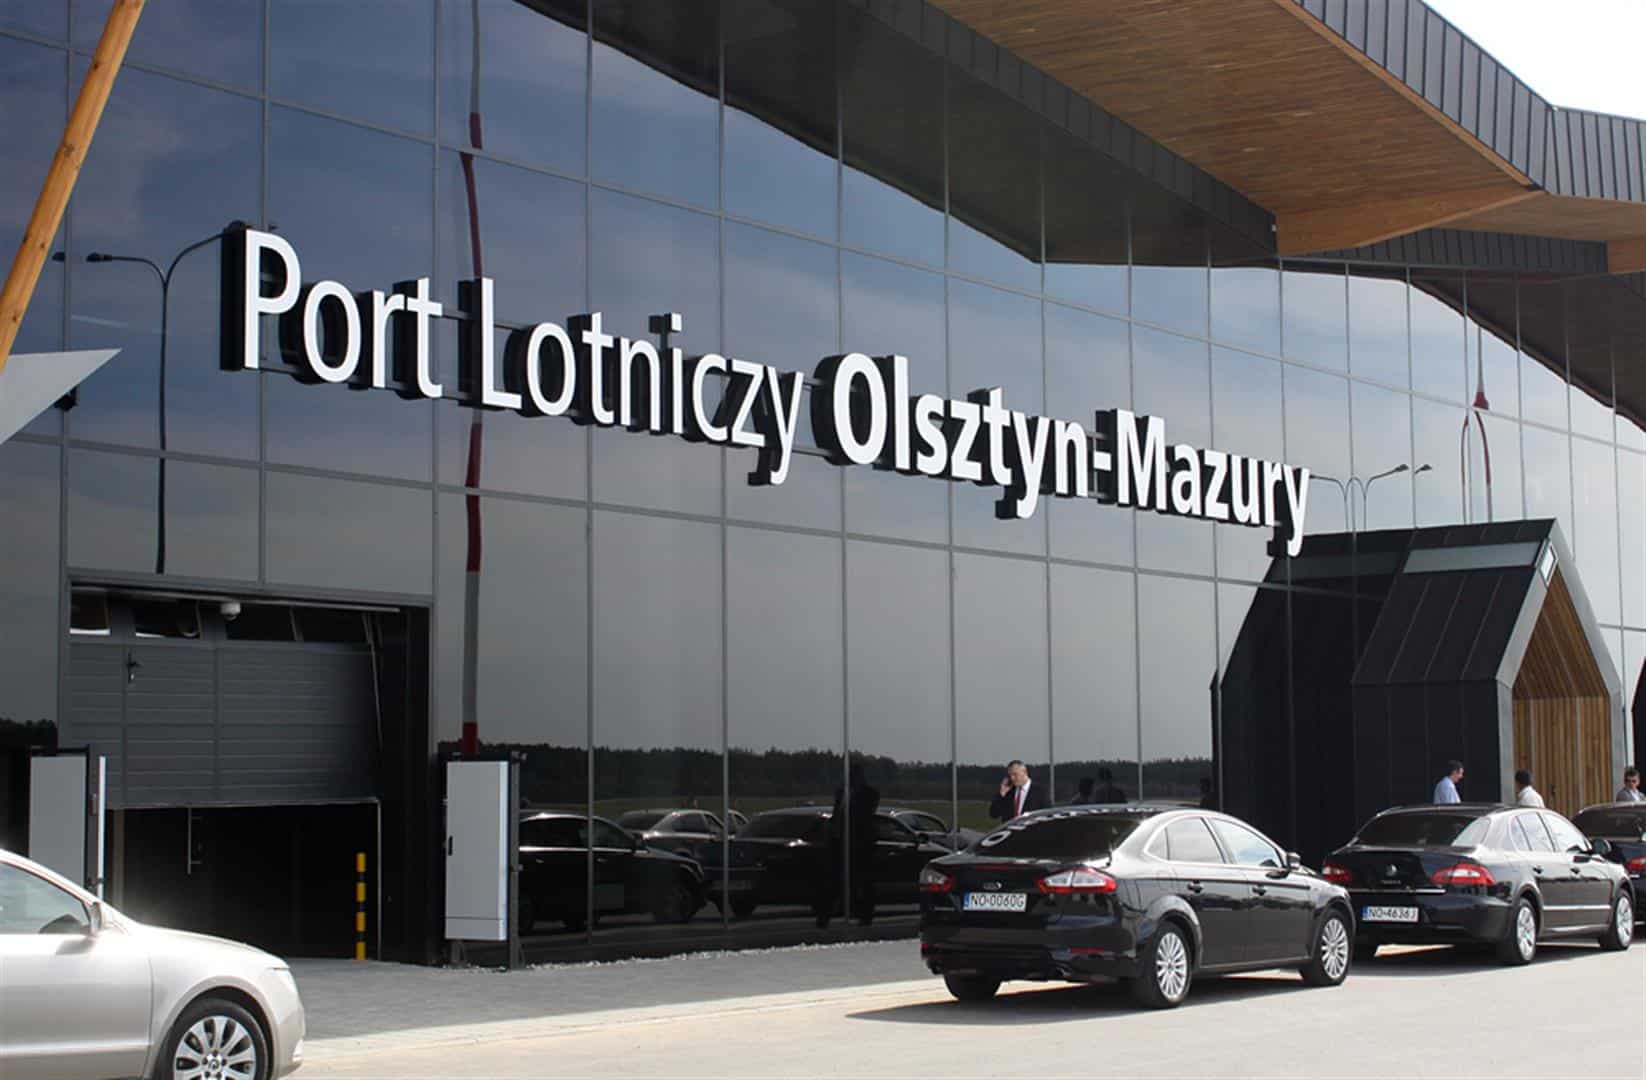 Ruszyła nowa linia autobusowa łącząca Port Lotniczy Olsztyn-Mazury z Mikołajkami Olsztyn, Szczytno, Wiadomości, zPAP